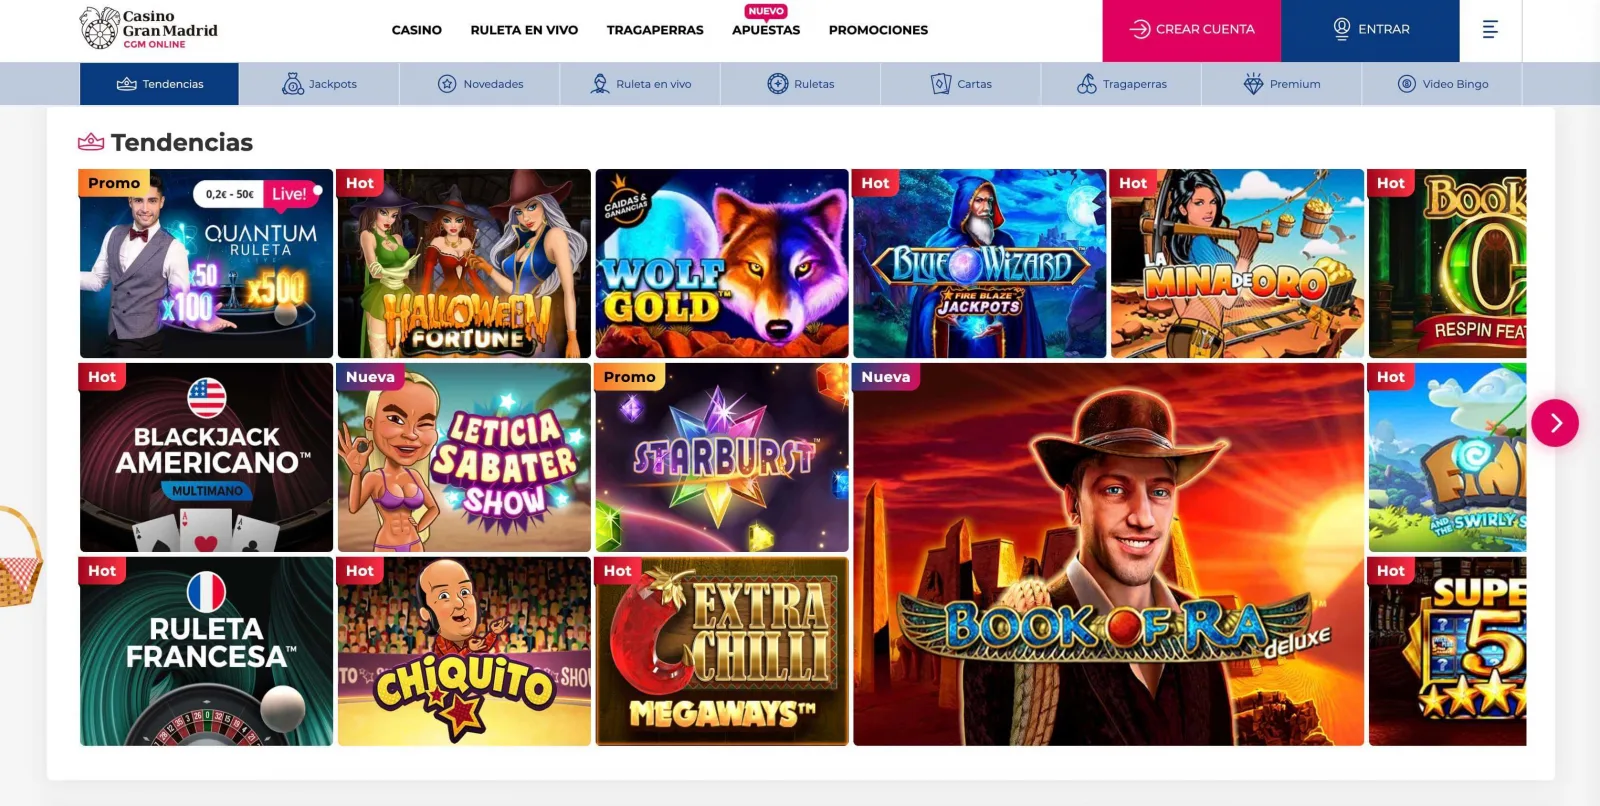 Casino Gran Madrid Tragaperras y Juegos online